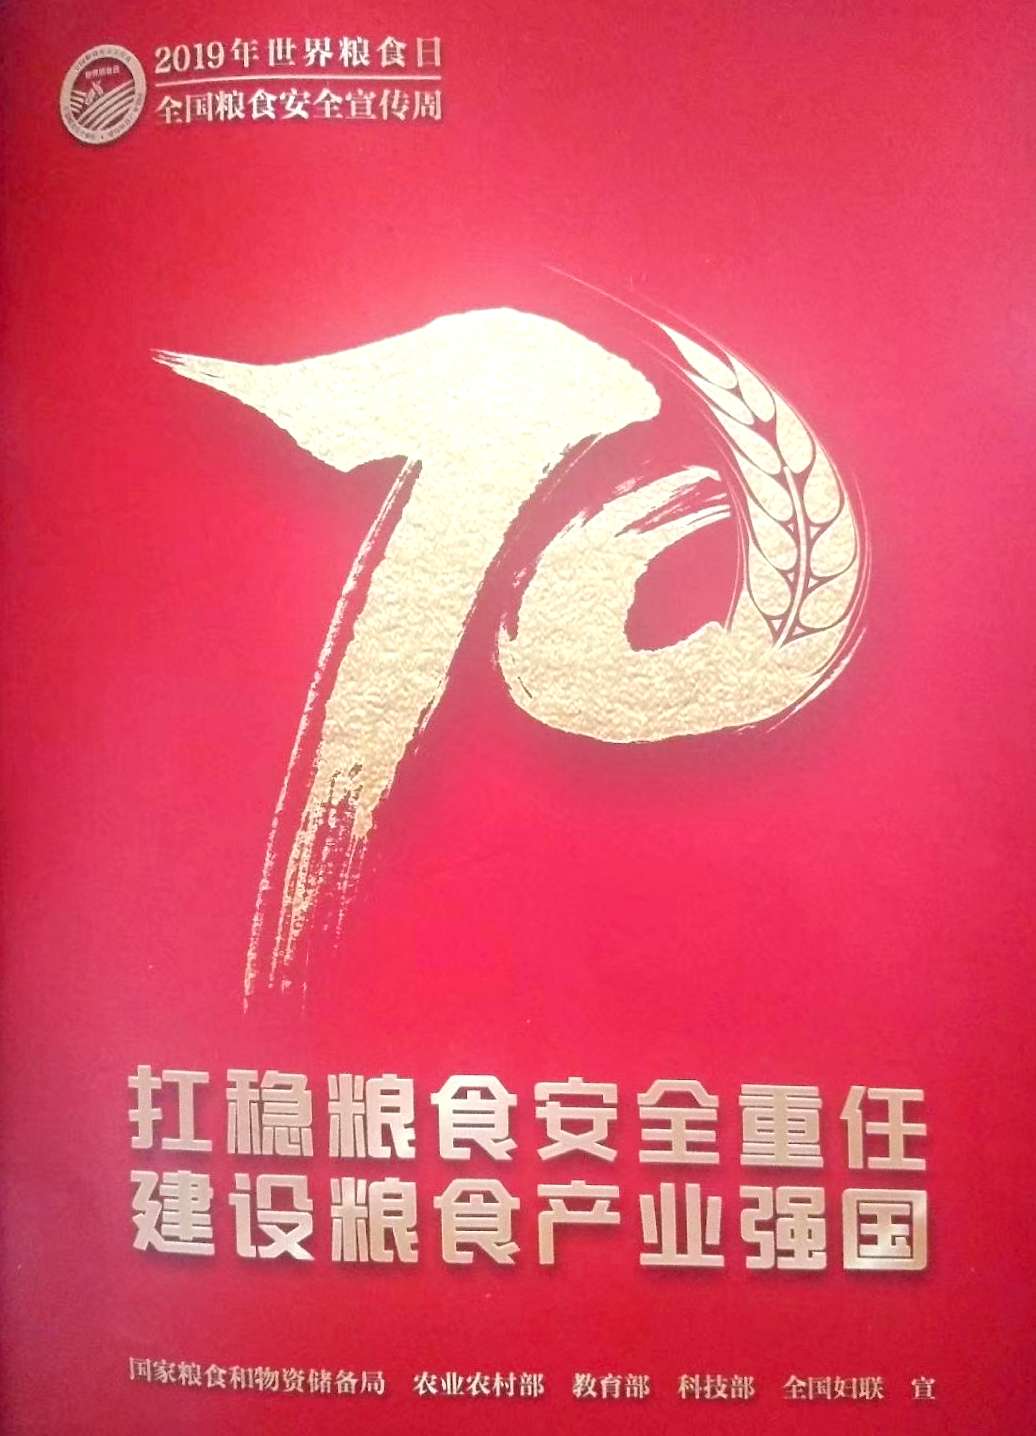 邵阳市2019年世界粮食日和爱粮节粮系列活动启动仪式在华龙中学举行